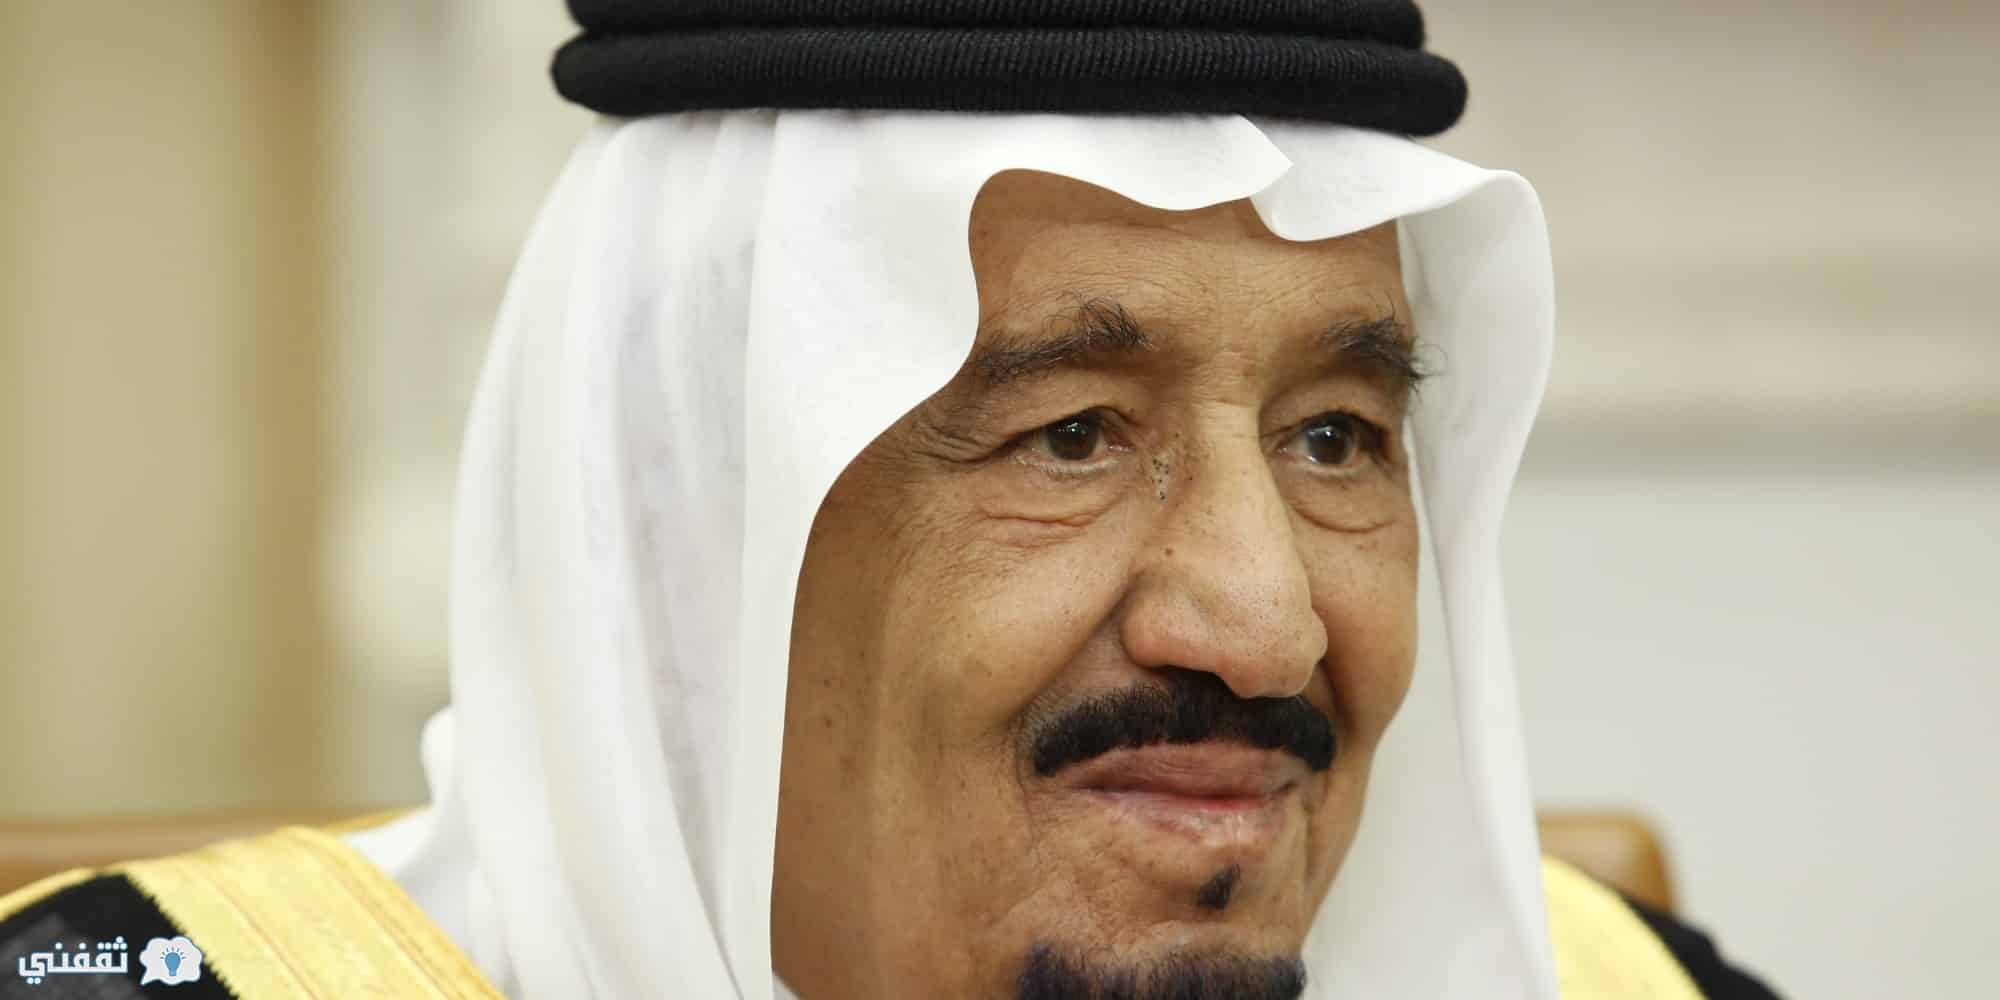 اجازة عيد الفطر 1438 للموظفين بالسعودية : الملك سلمان يوجه بتقديم إجازة العيد 2017